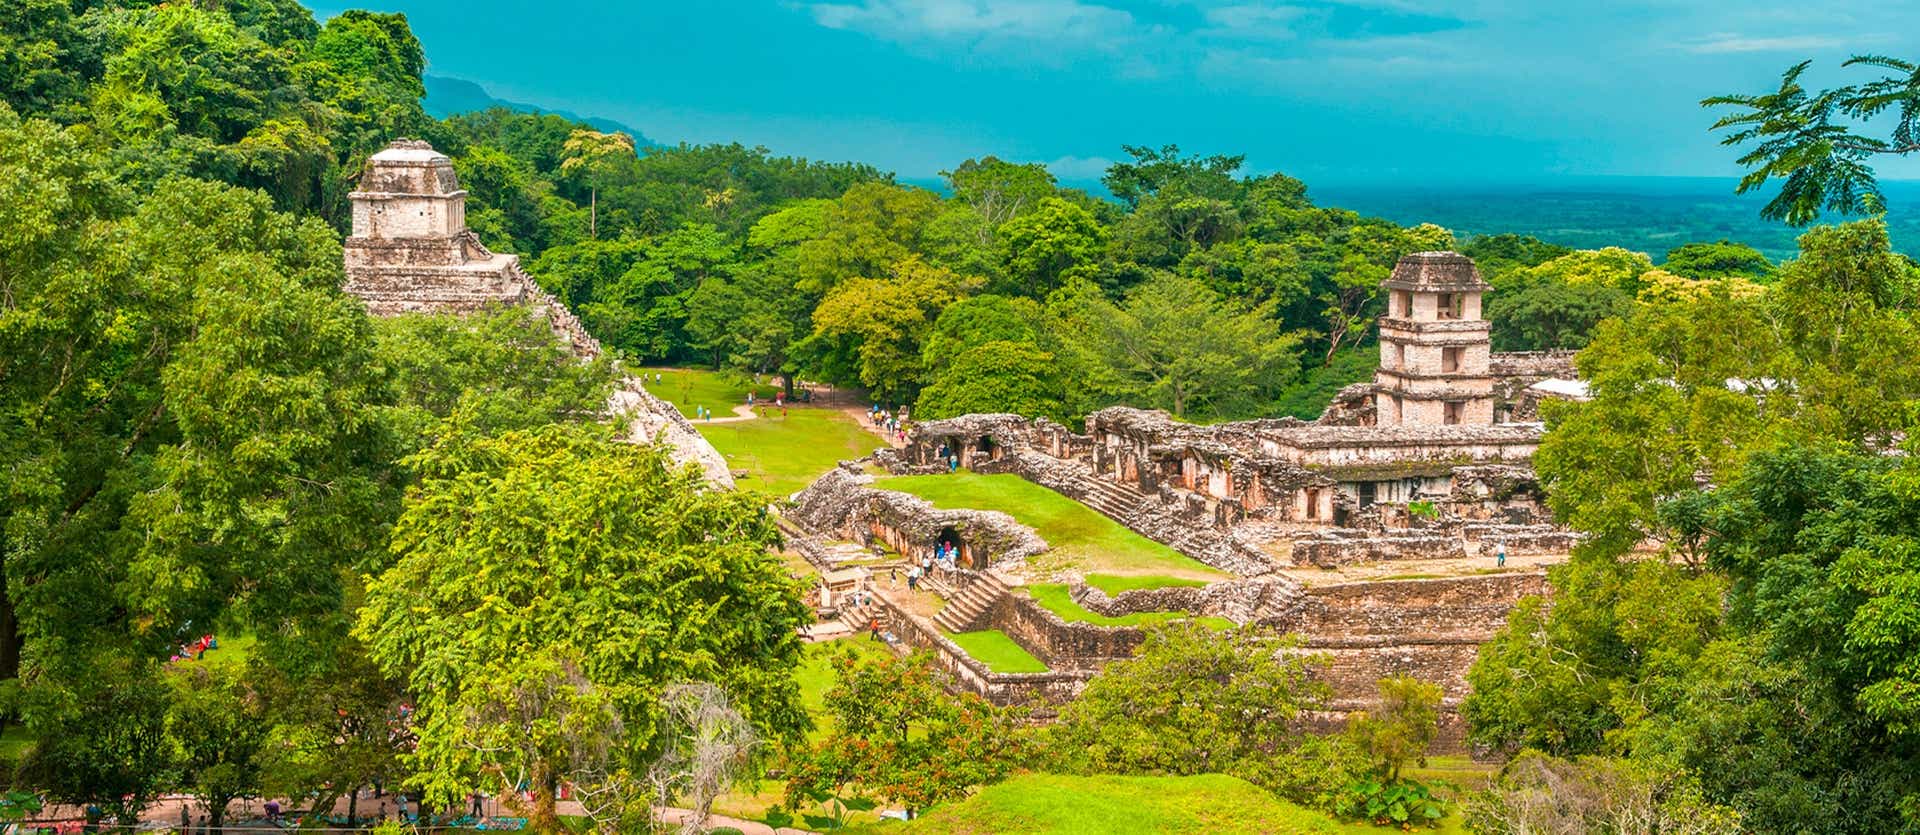 Mayan Ruins <span class="iconos separador"></span> Palenque